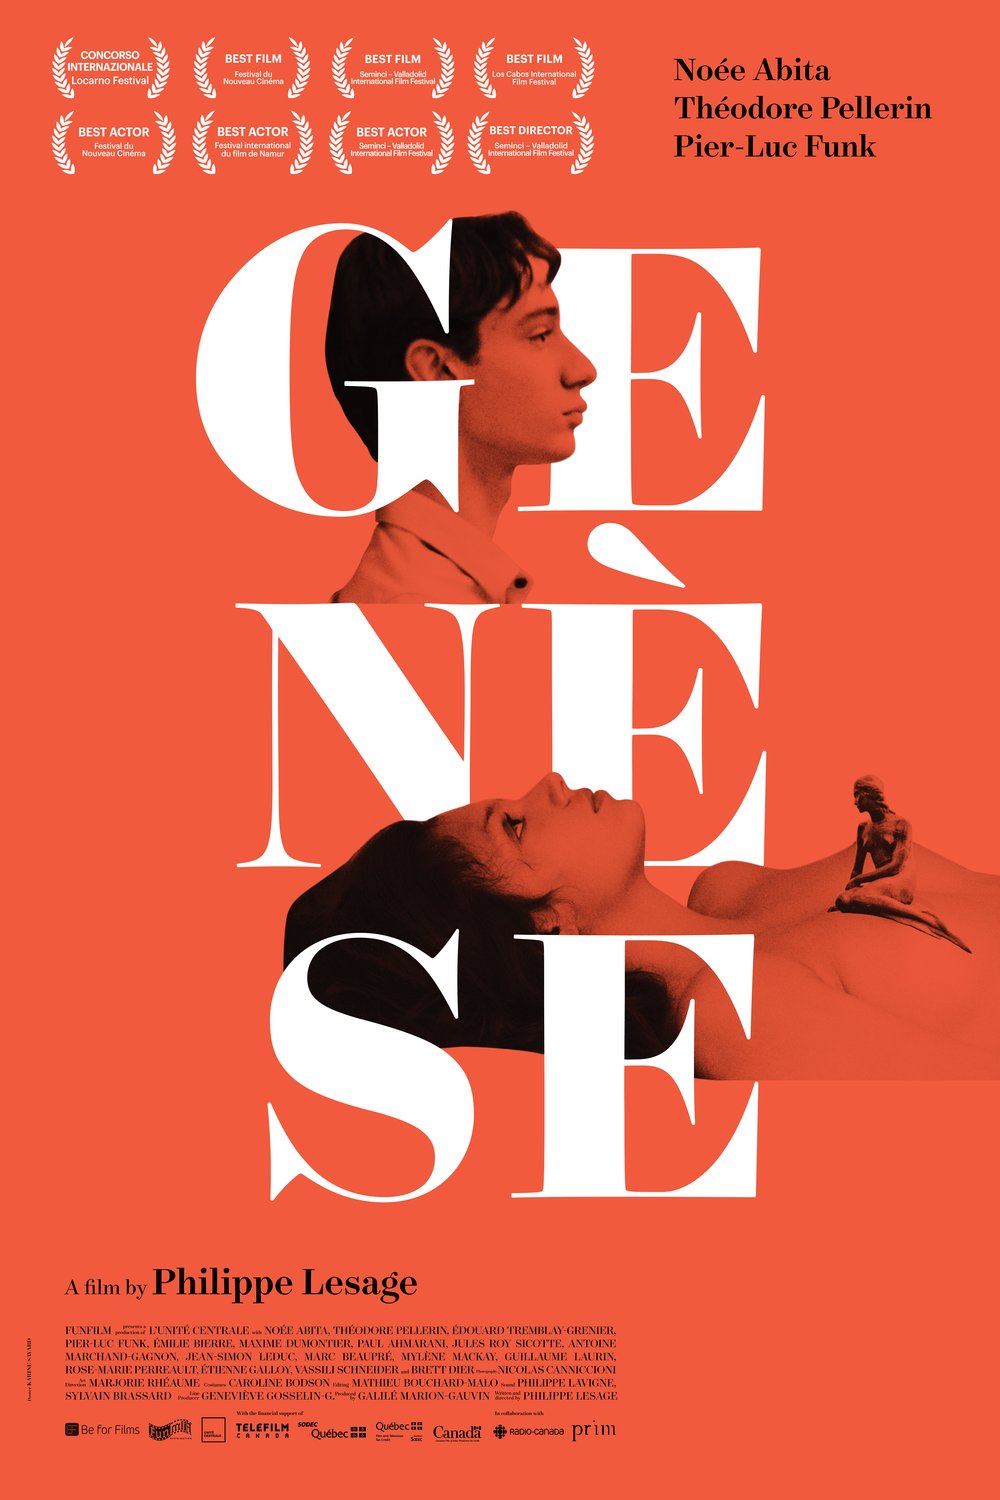 L'affiche du film Genesis